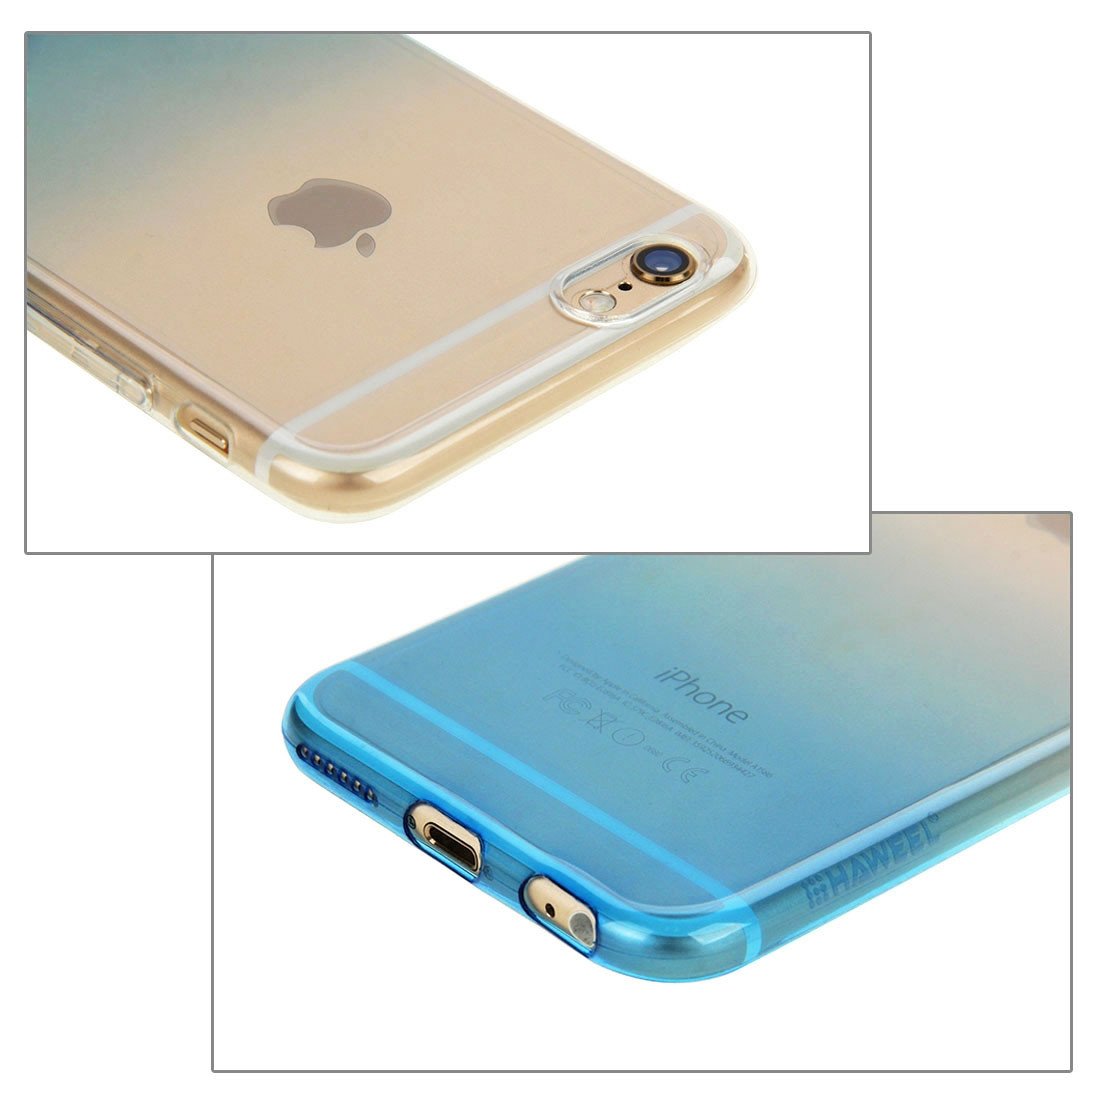 Θηκη TPU Haweel 0,3mm - iPhone 6 Plus/6s Plus - Γαλαζιο / Διαφανο - iThinksmart.gr